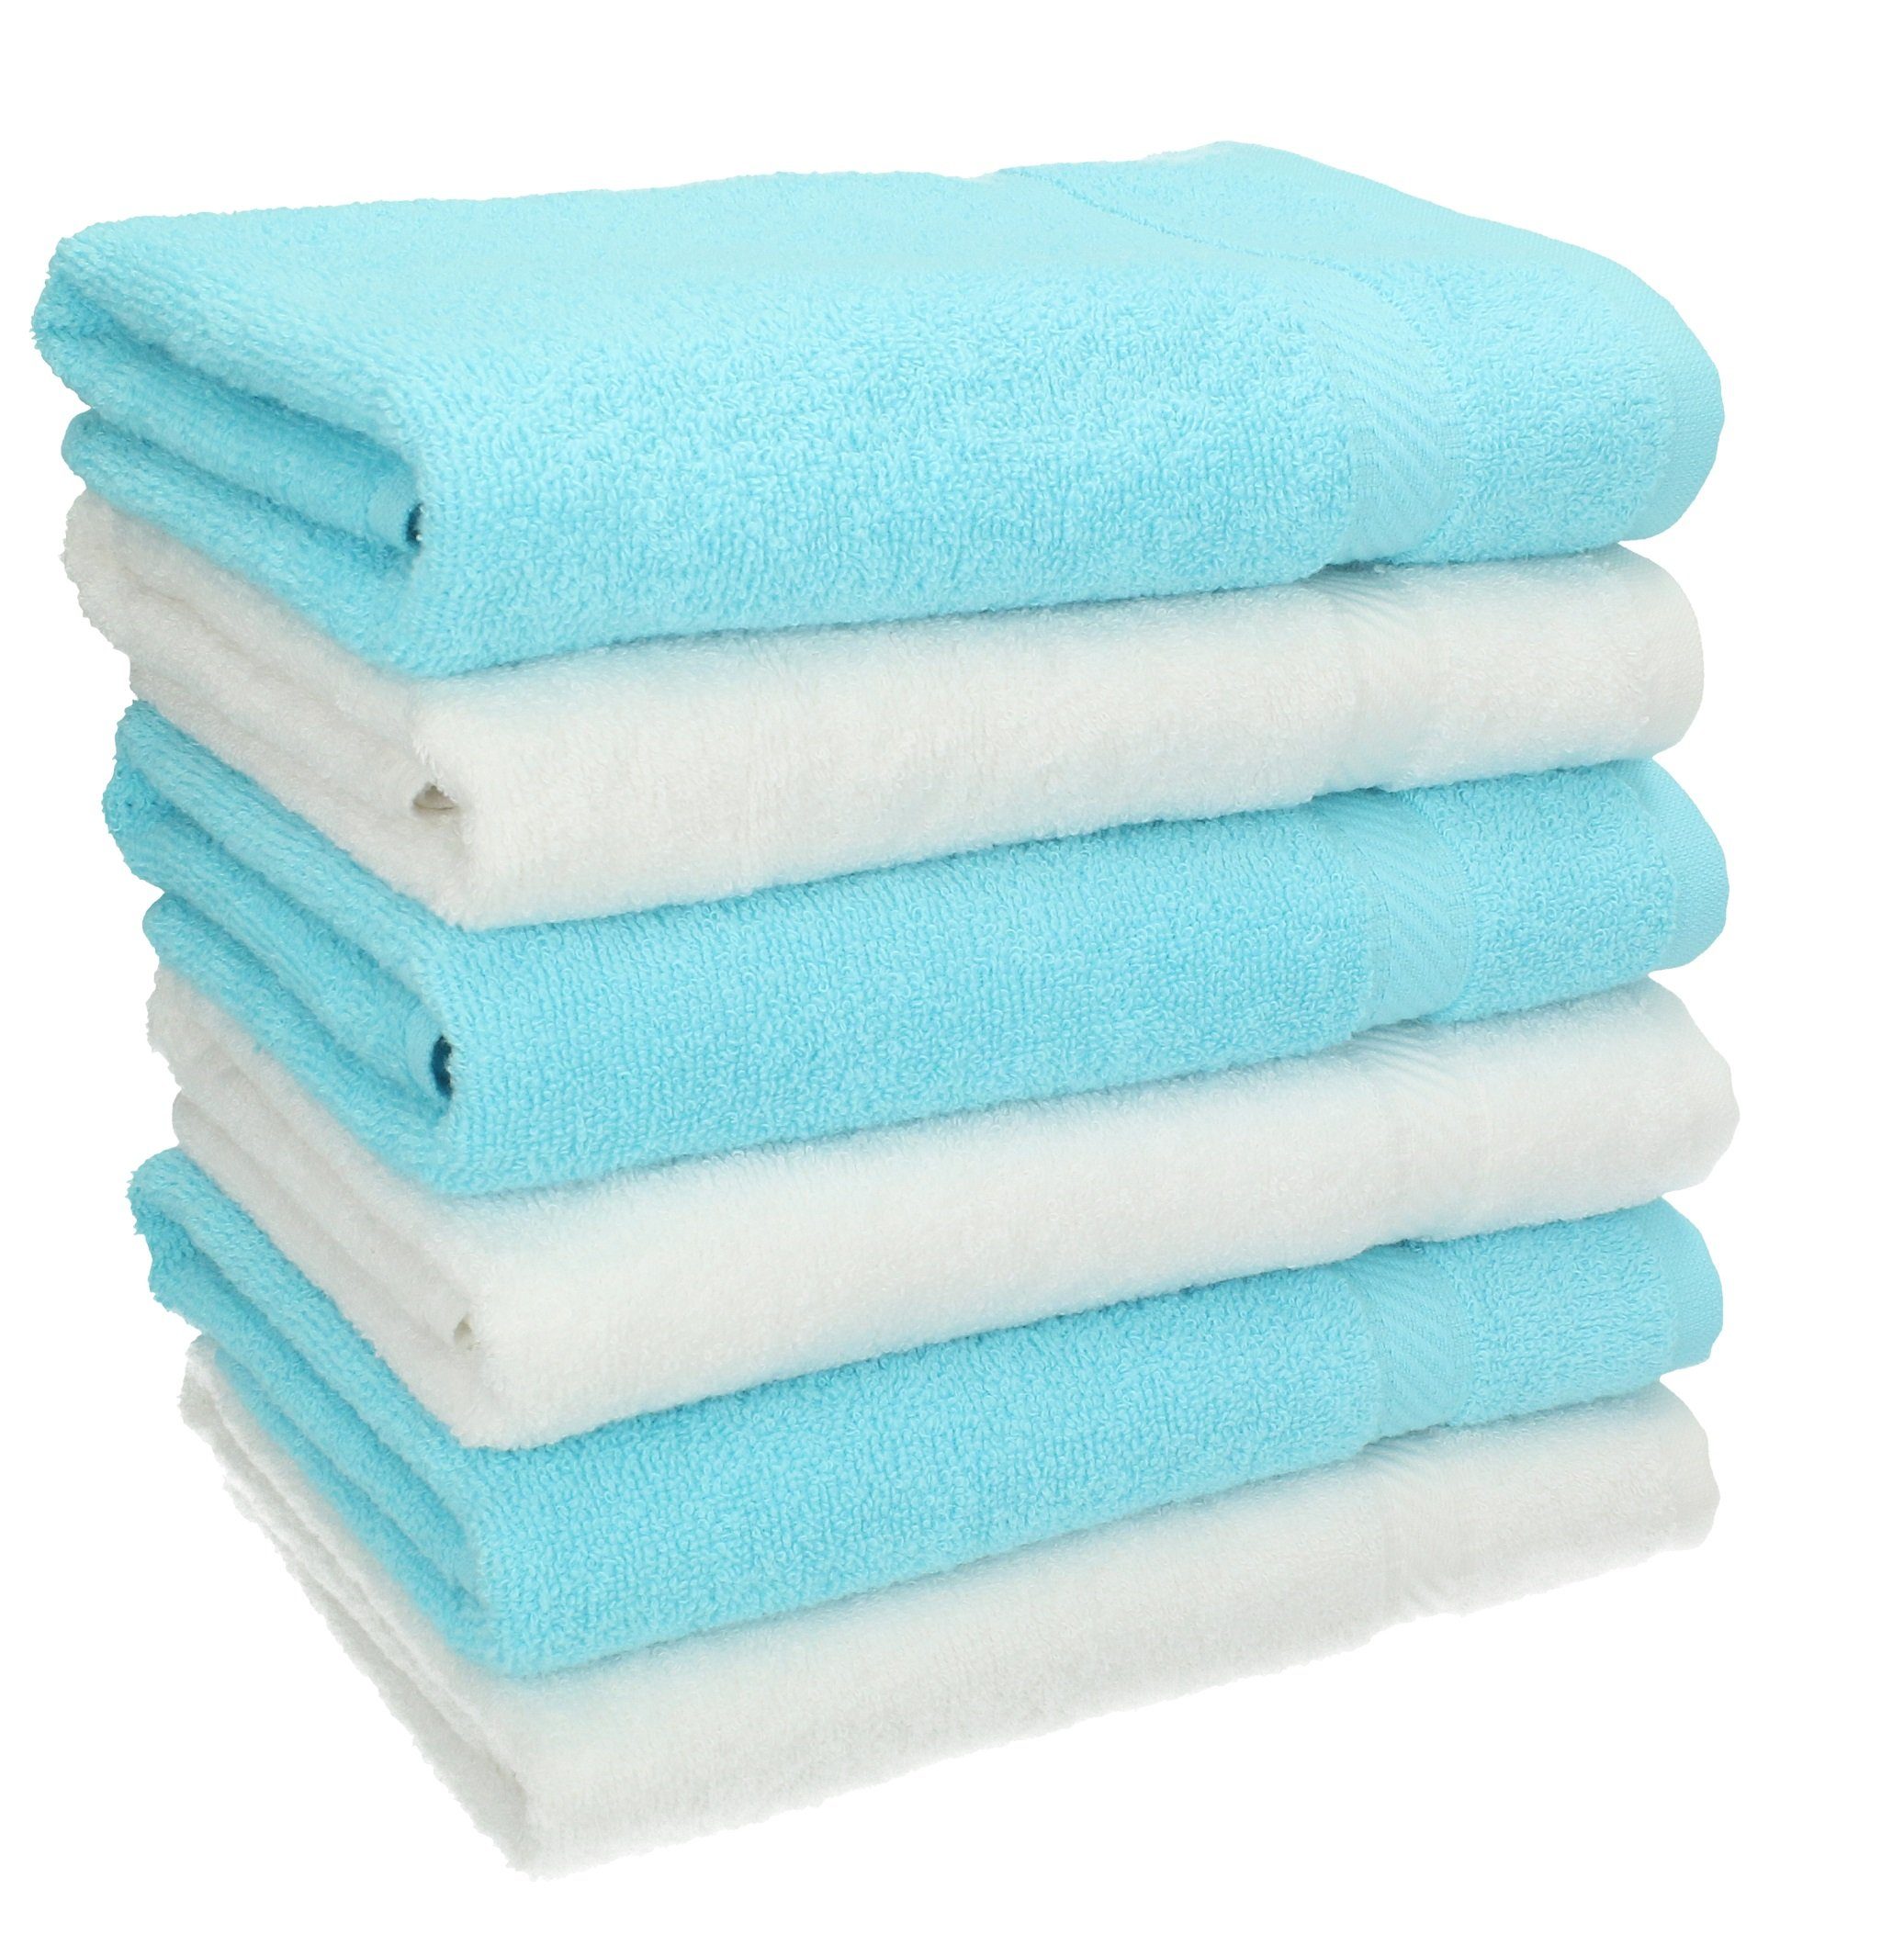 Betz Handtücher 6 Stück Handtücher Palermo 100% Baumwolle Größe 50 x 100 cm Handtuch Set Farbe weiß und türkis, 100% Baumwolle